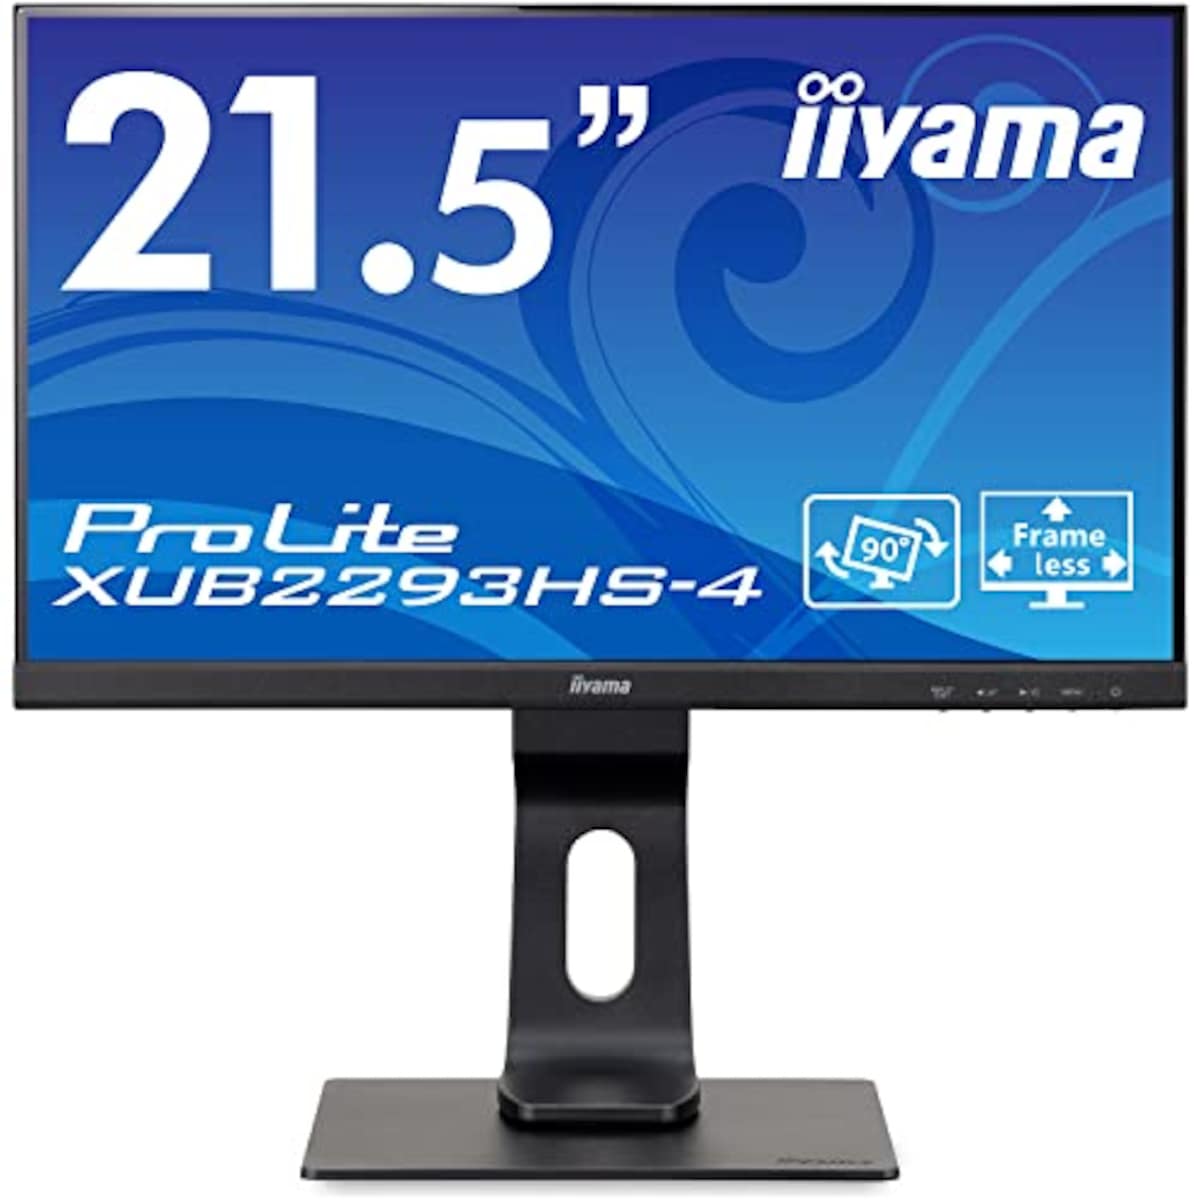 マウスコンピューター(Mouse Computer) iiyama モニター ディスプレイ 21.5インチ フルHD IPS方式 高さ調整 DisplayPort HDMI D-Sub 全ケーブル付 3年保証 国内サポート XUB2293HS-B4